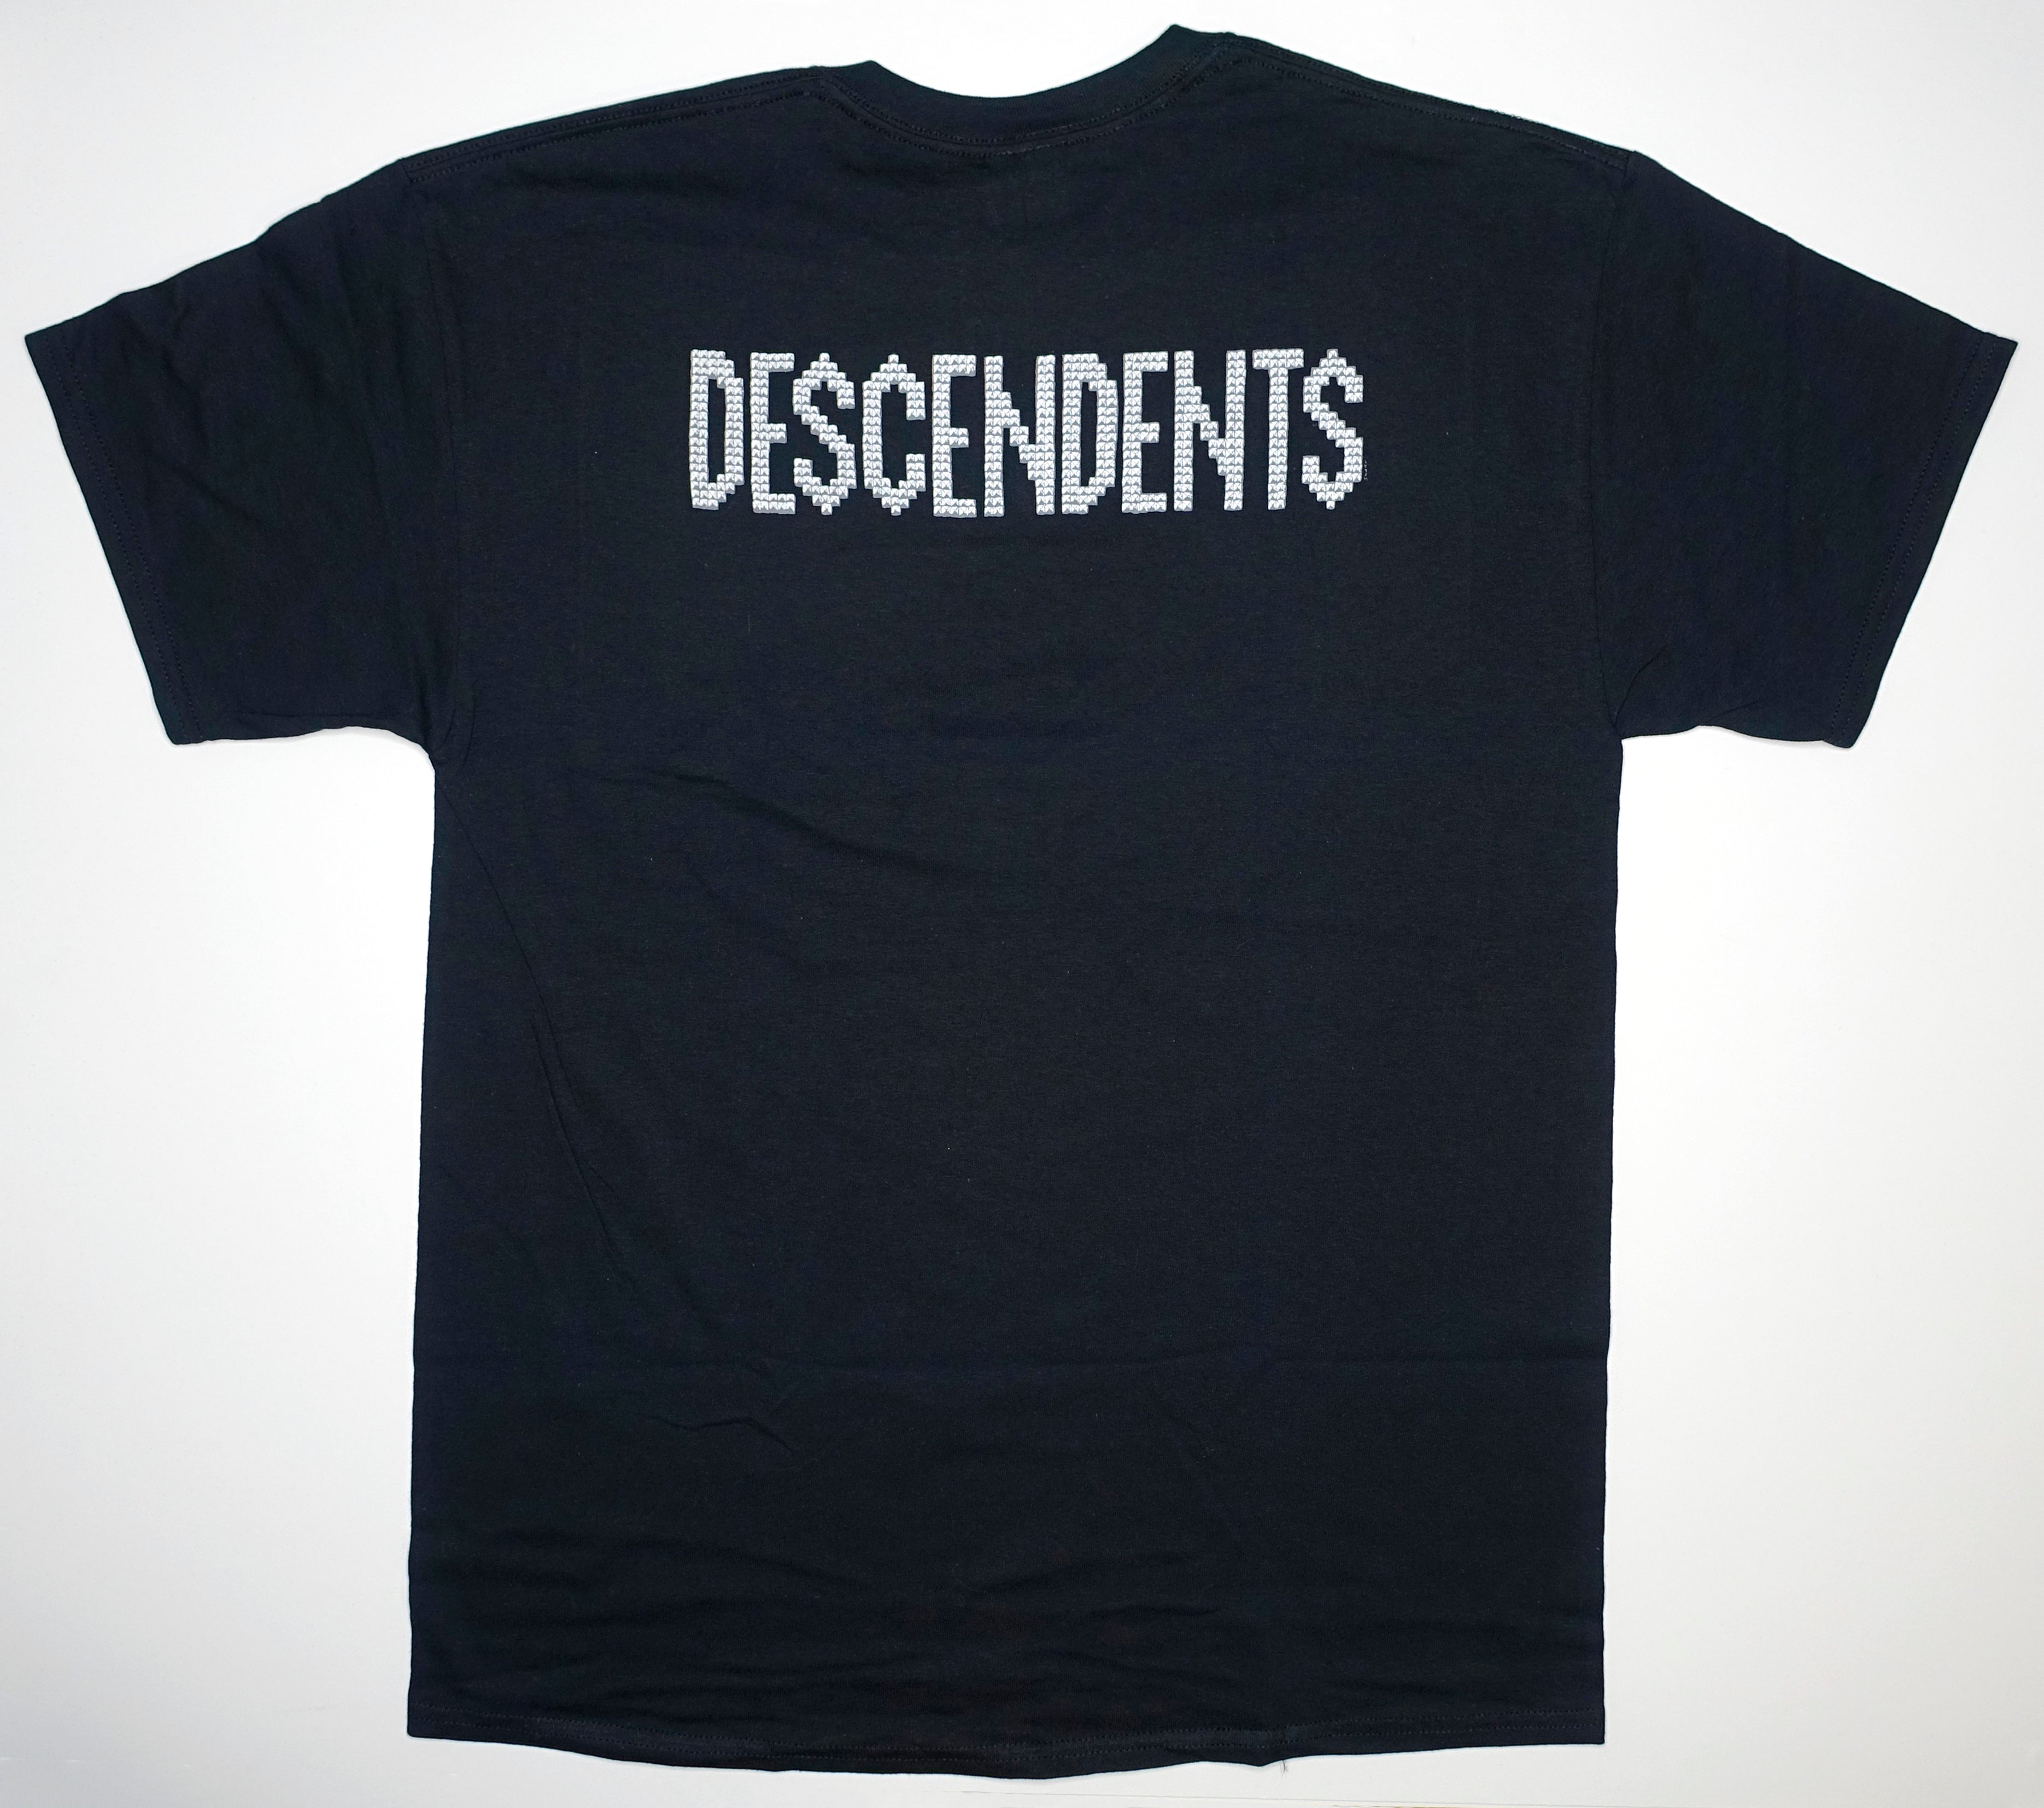 Descendents - Punk Stud Milo Tour Shirt Size Large